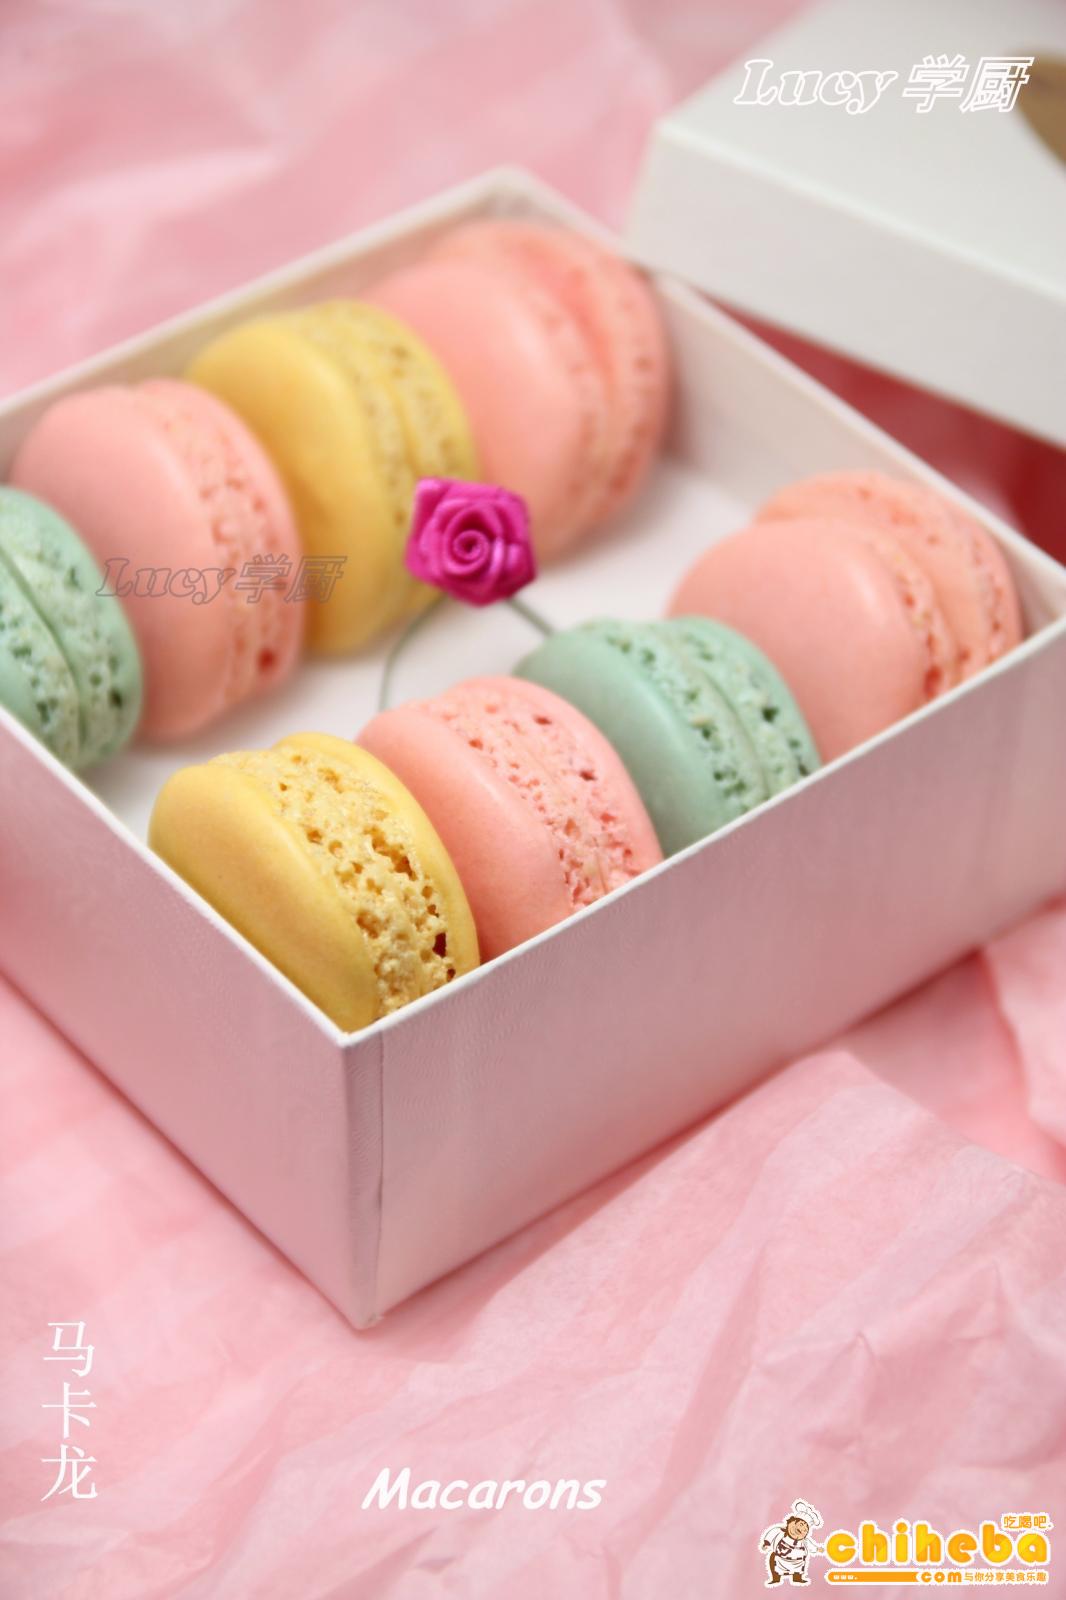 情人节首选法国甜品马卡龙Macaron